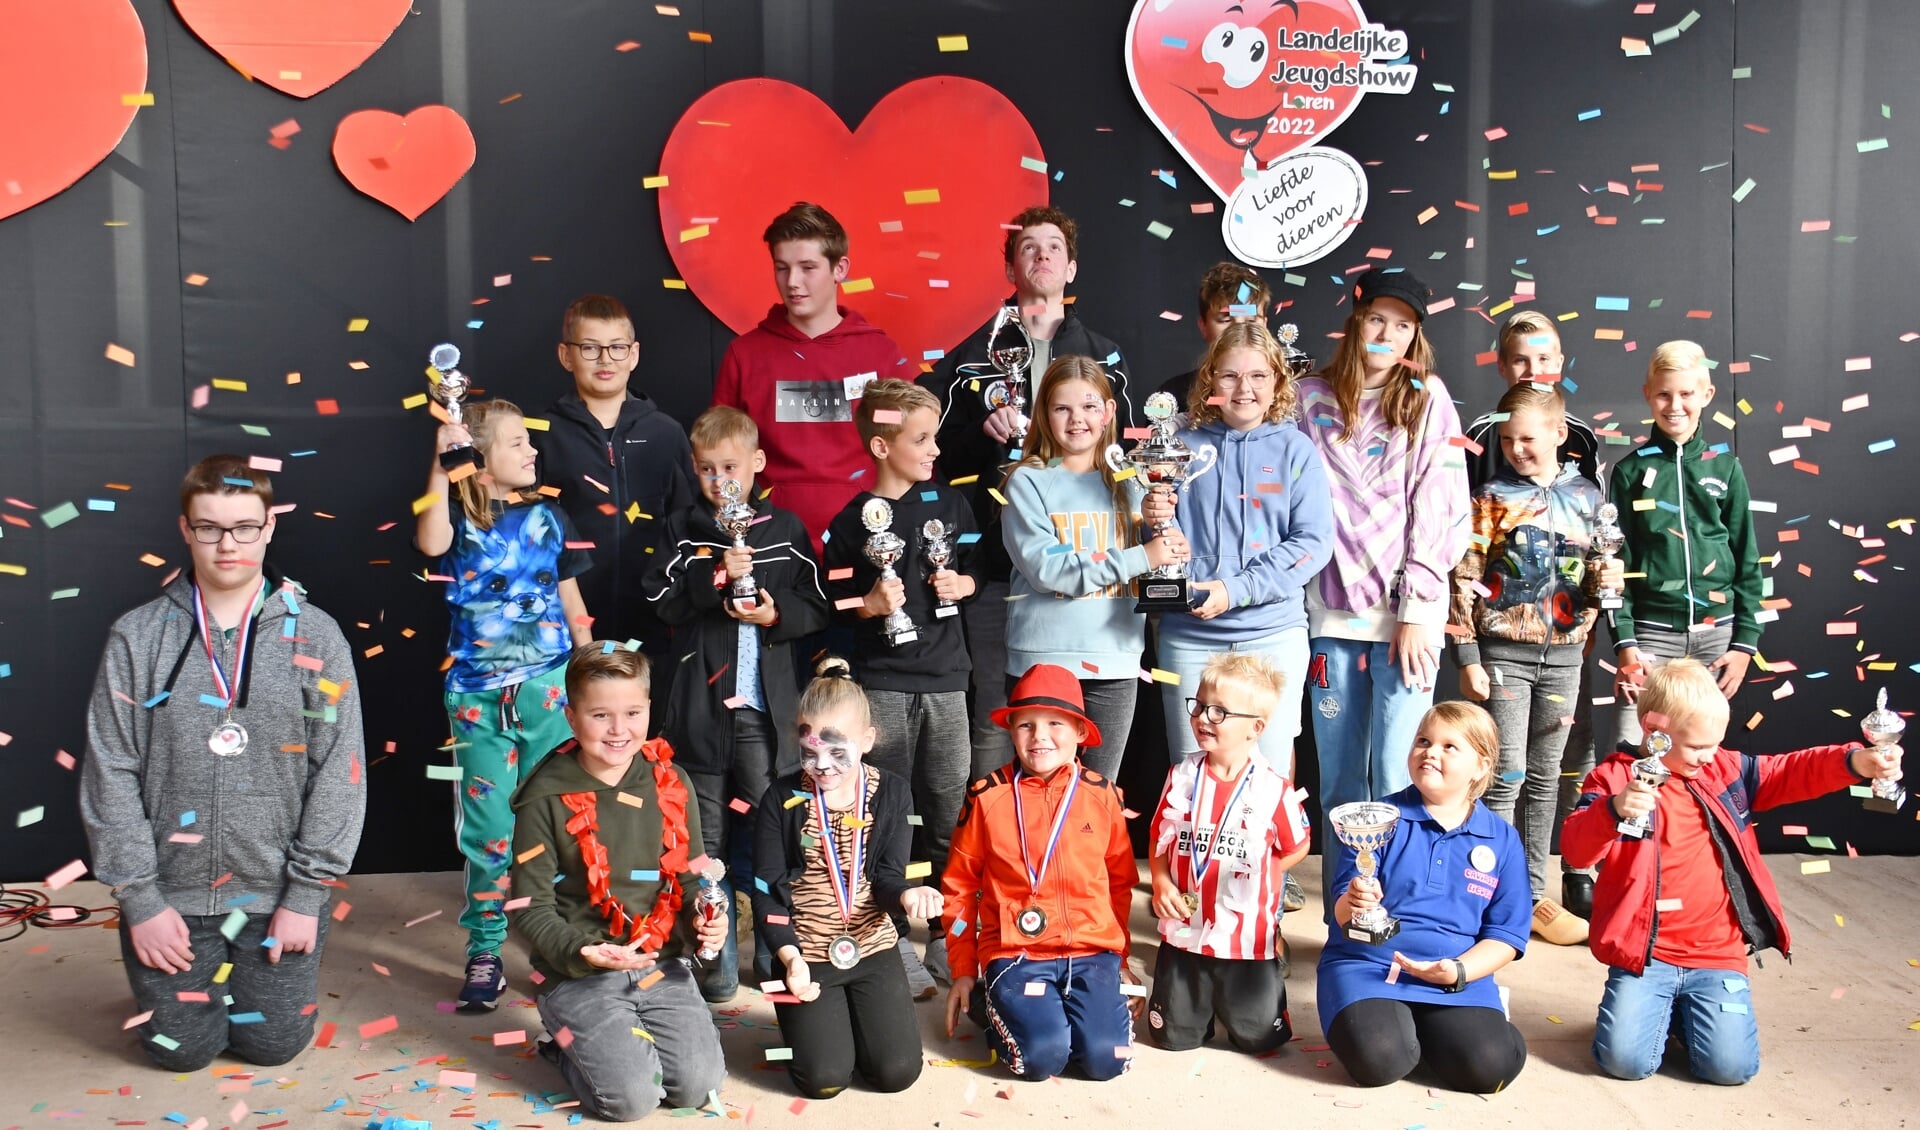 Alle prijswinnars van de landelijke jeugdshow. Foto: Theo Janssen 